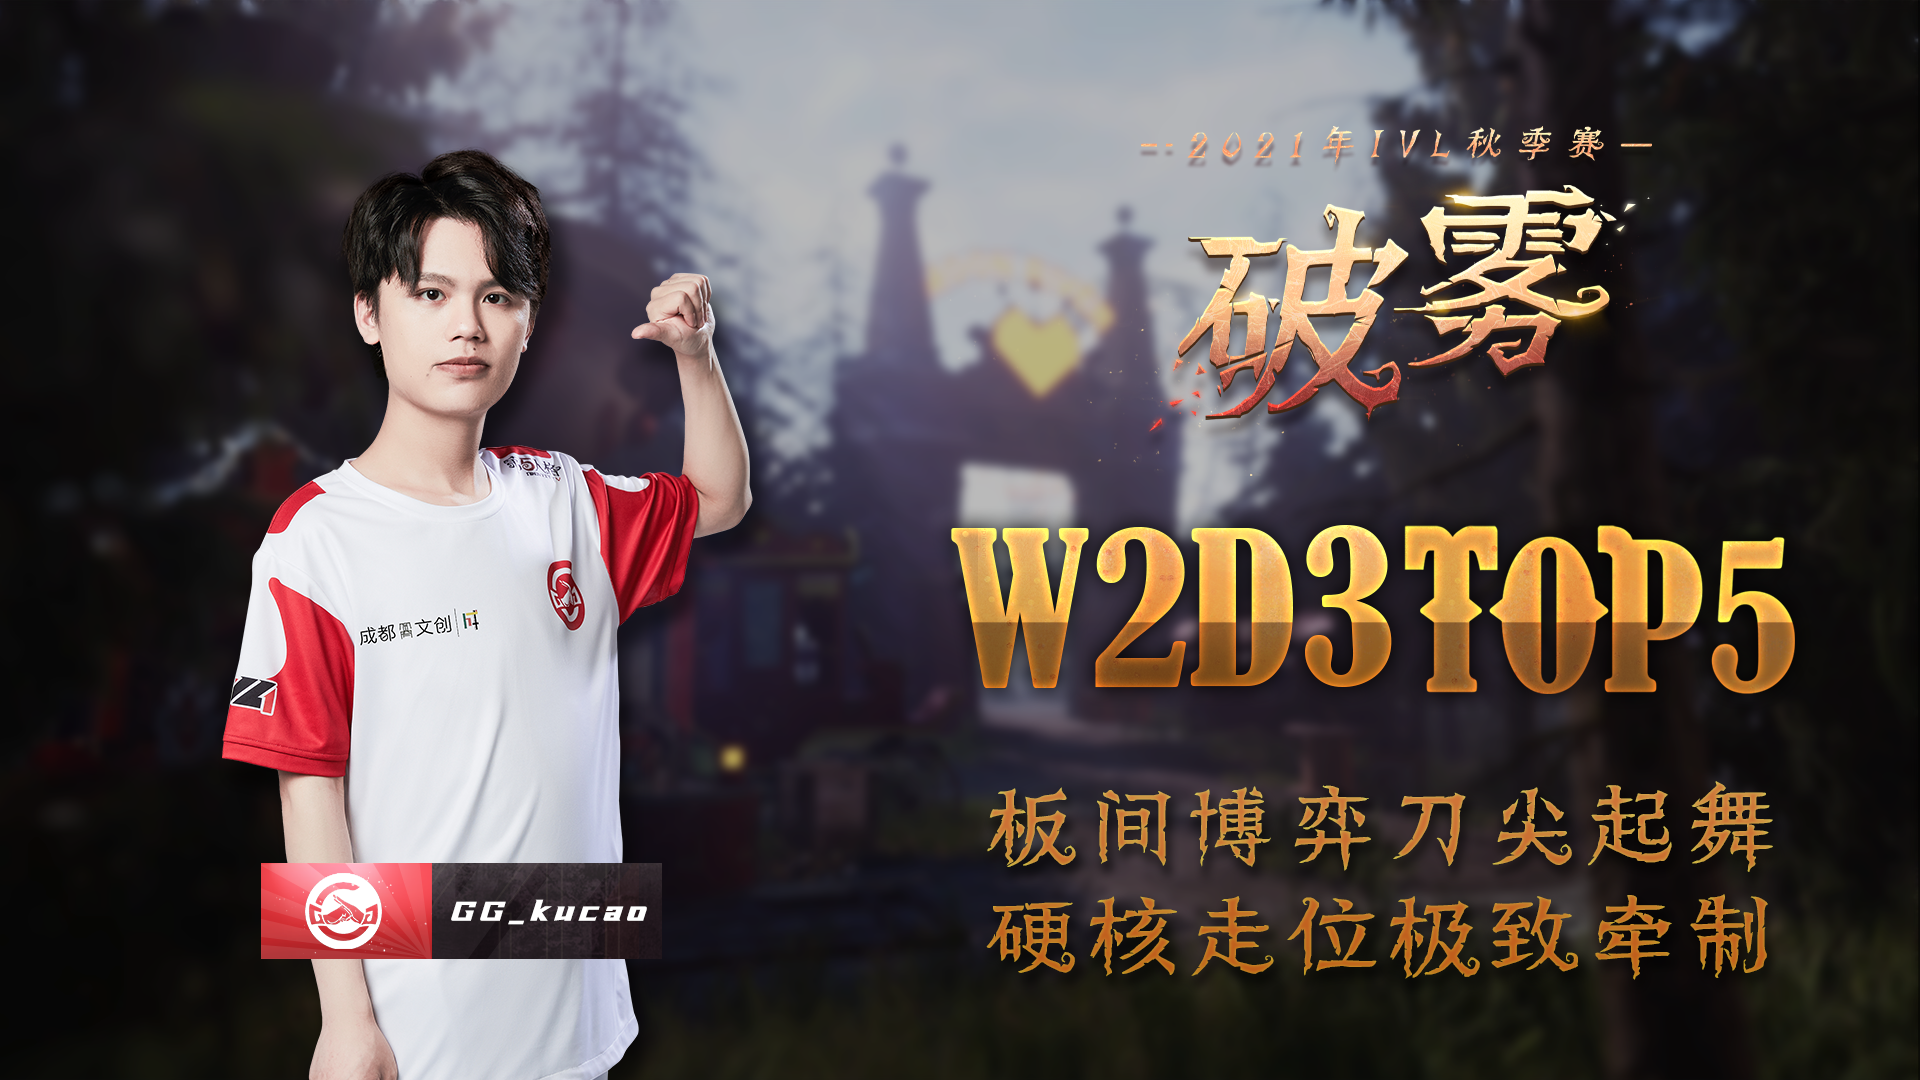 【2021IVL】秋季赛W2D3 TOP5：GG_kucao 板间博弈极致牵制